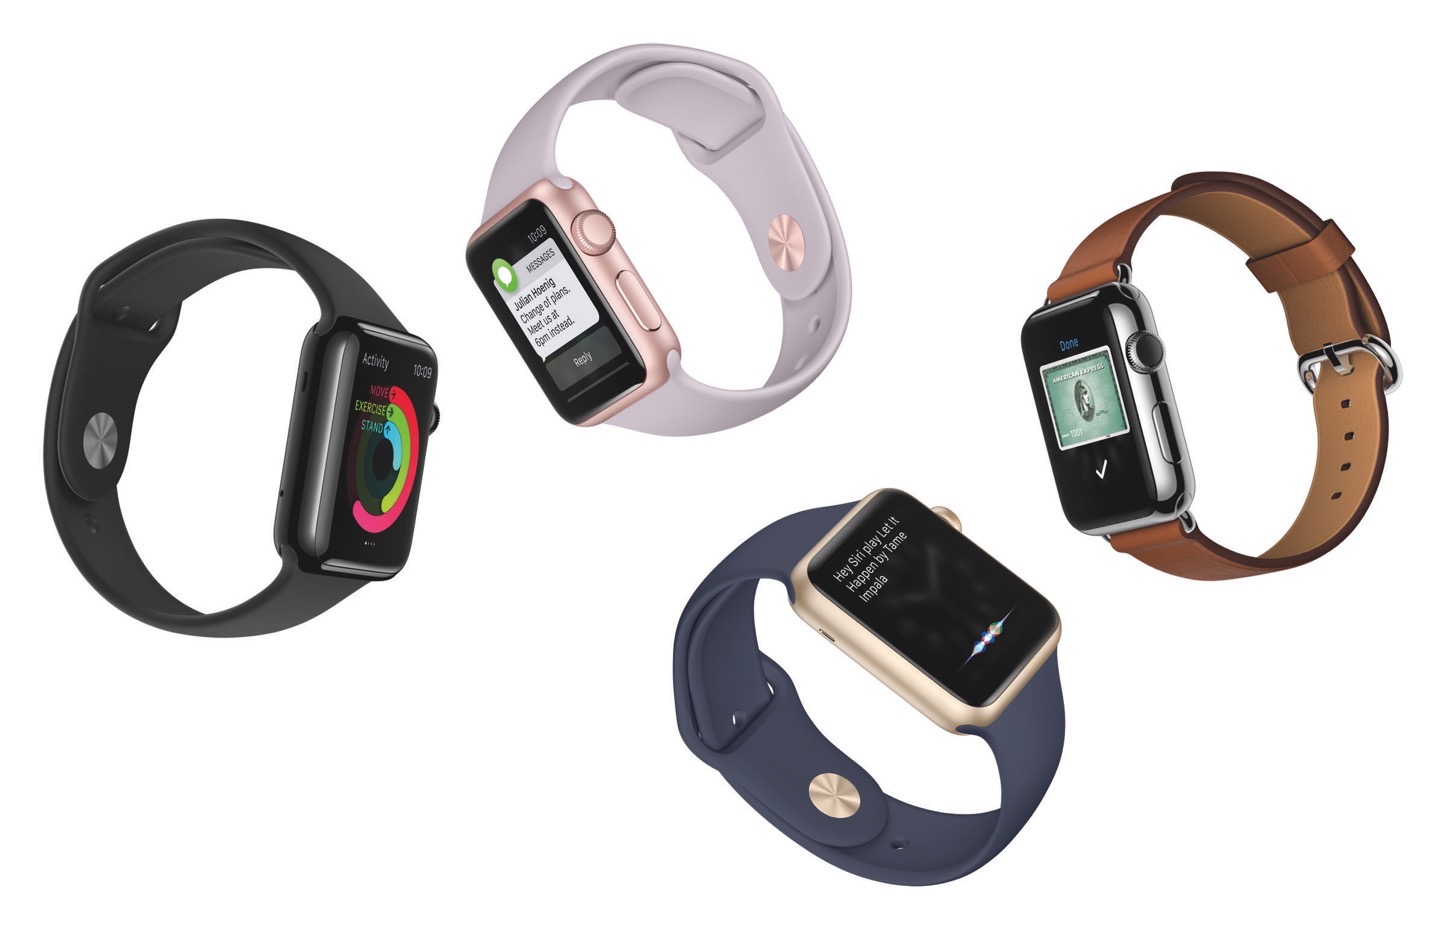 Apple Watch Sport」のゴールド/ローズゴールドモデル、正式発表 